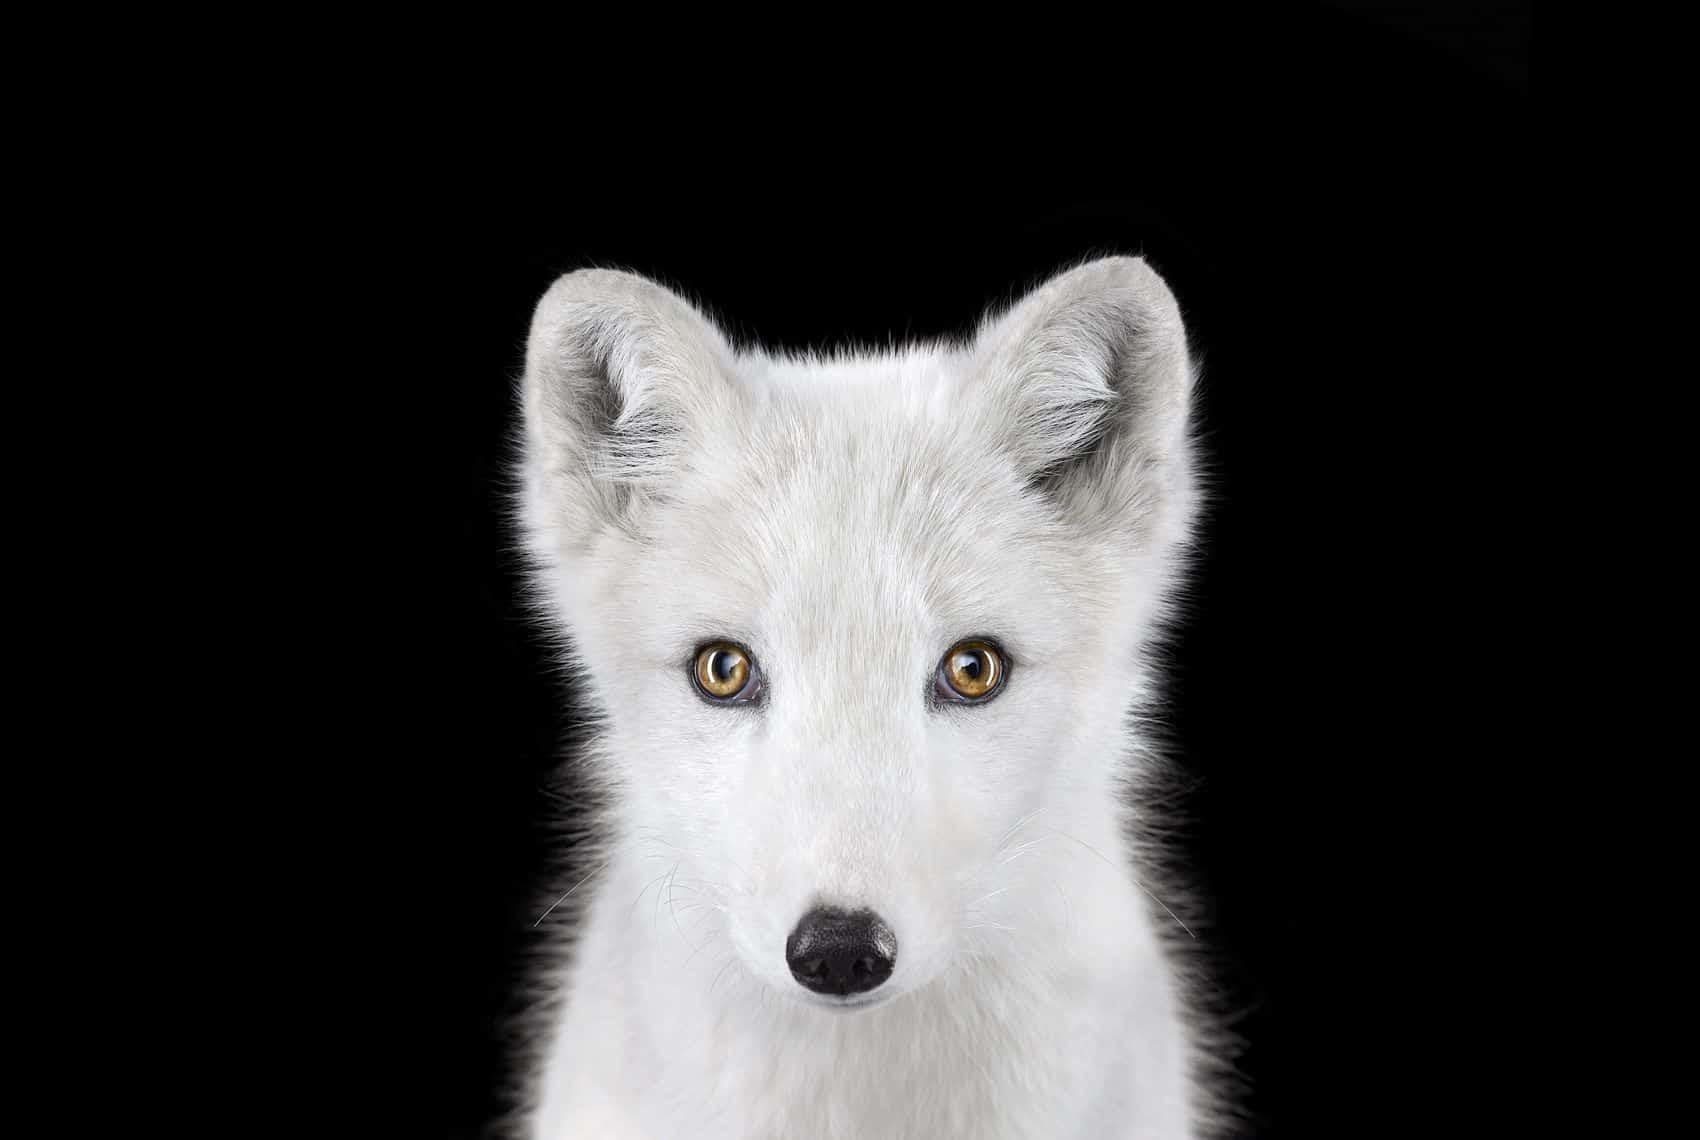 Arctic Fox #1, Los Angeles, CA, 2011" ist eine limitierte Auflage eines Fotos des zeitgenössischen Künstlers Brad Wilson aus der Serie "Affinity", die Studioporträts von Wildtieren zeigt. 

Dieses Foto wird nur als ungerahmter Abzug verkauft. Es ist